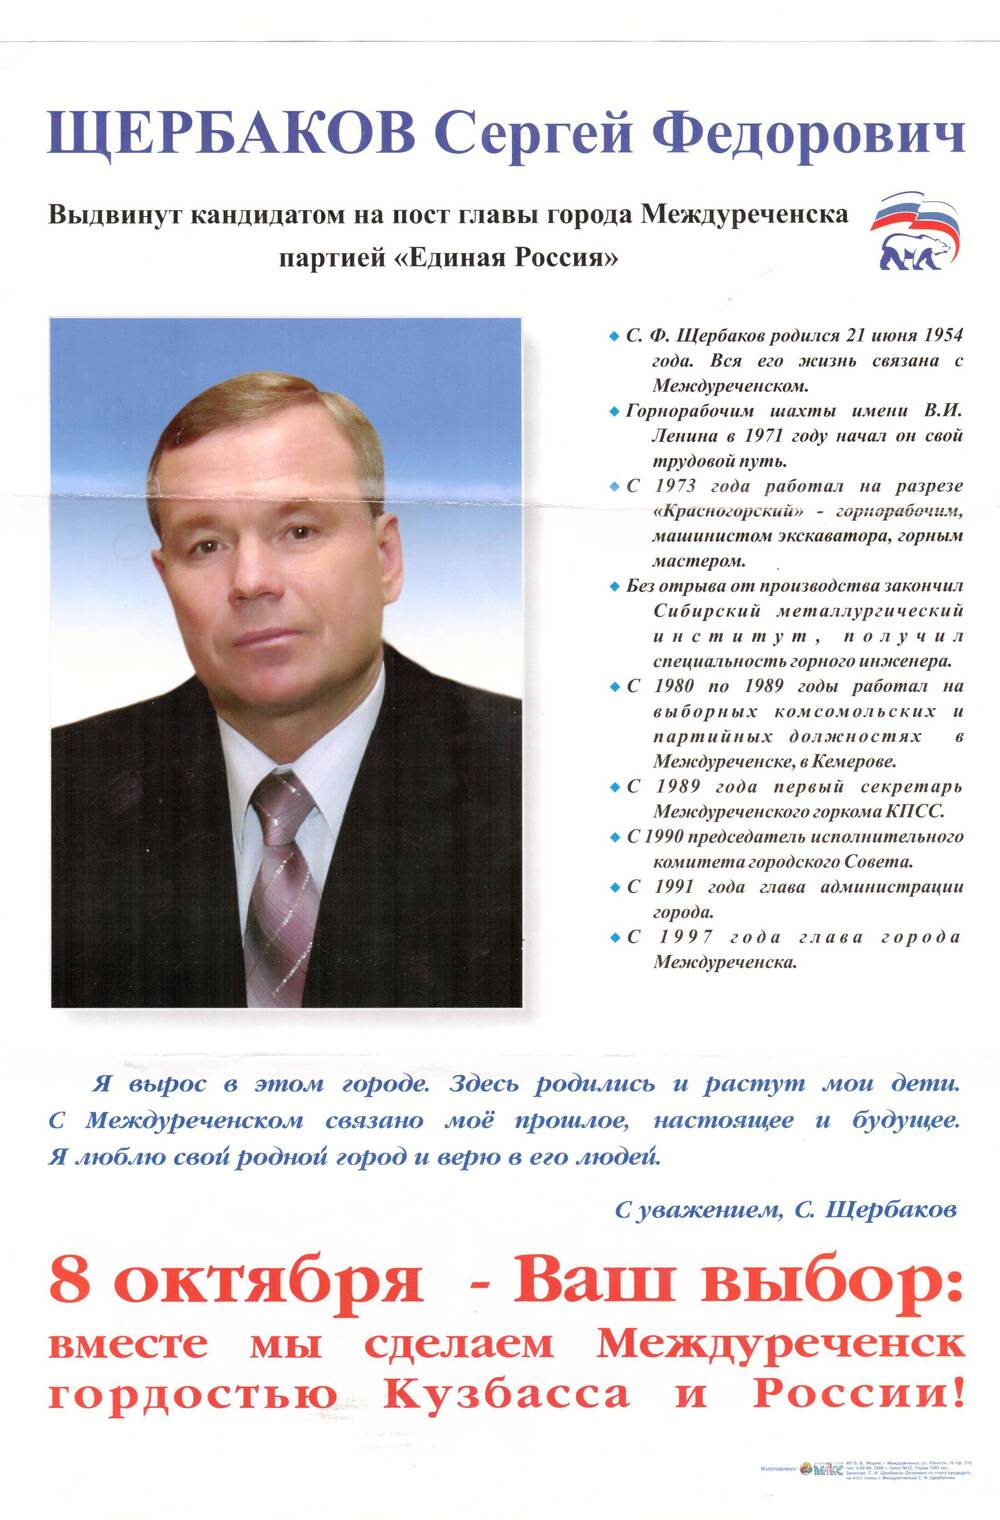 Плакат с изображением С. Ф. Щербакова